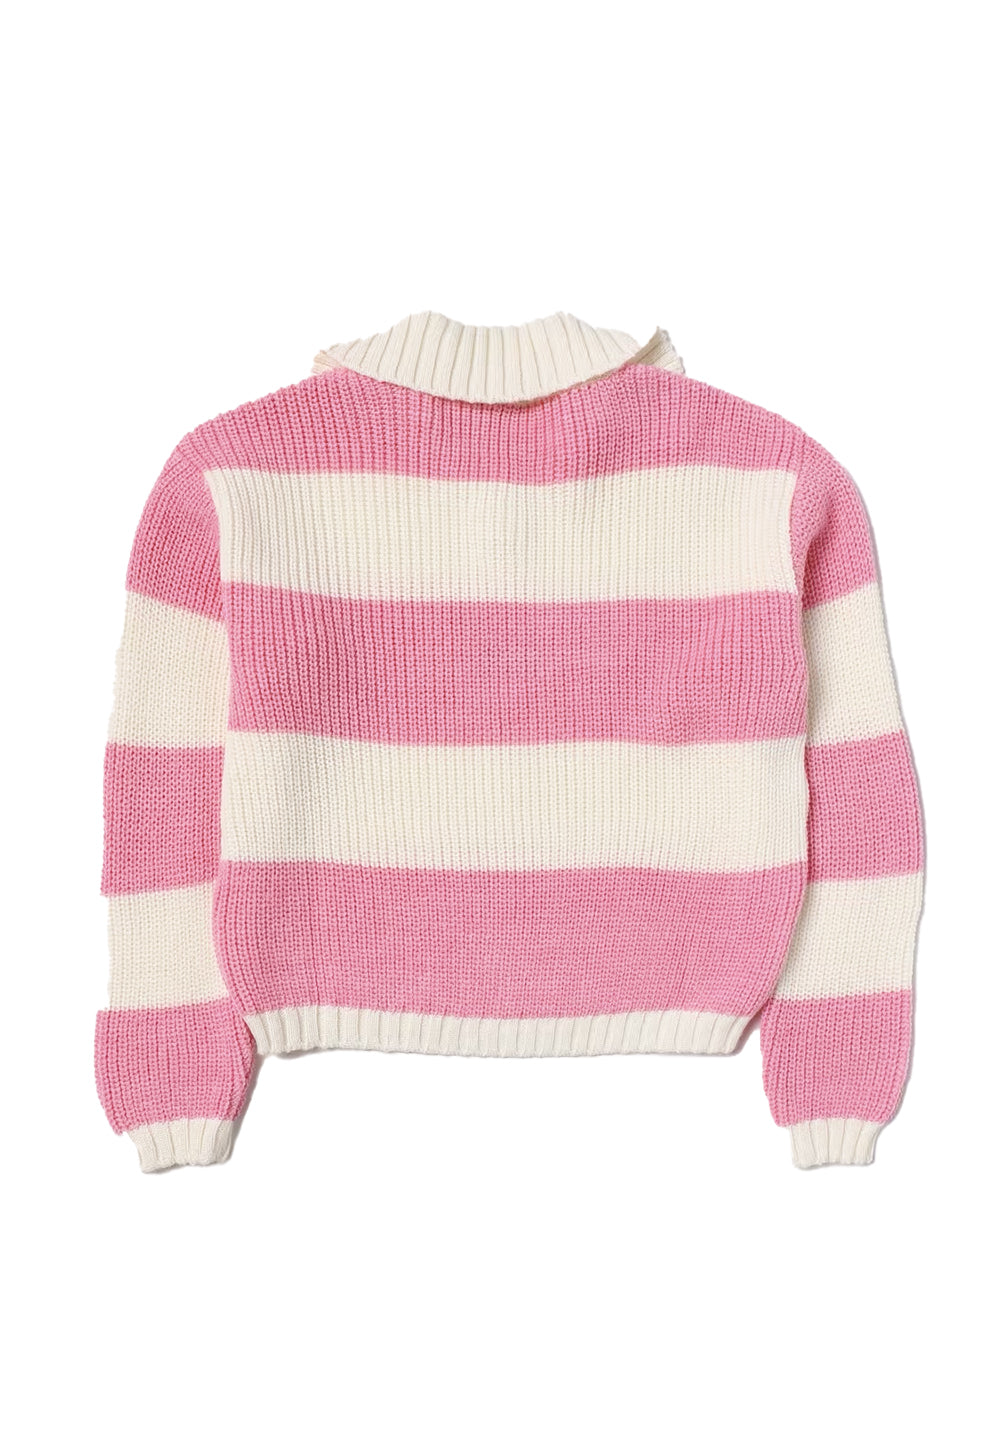 Maglione crema-rosa per bambina